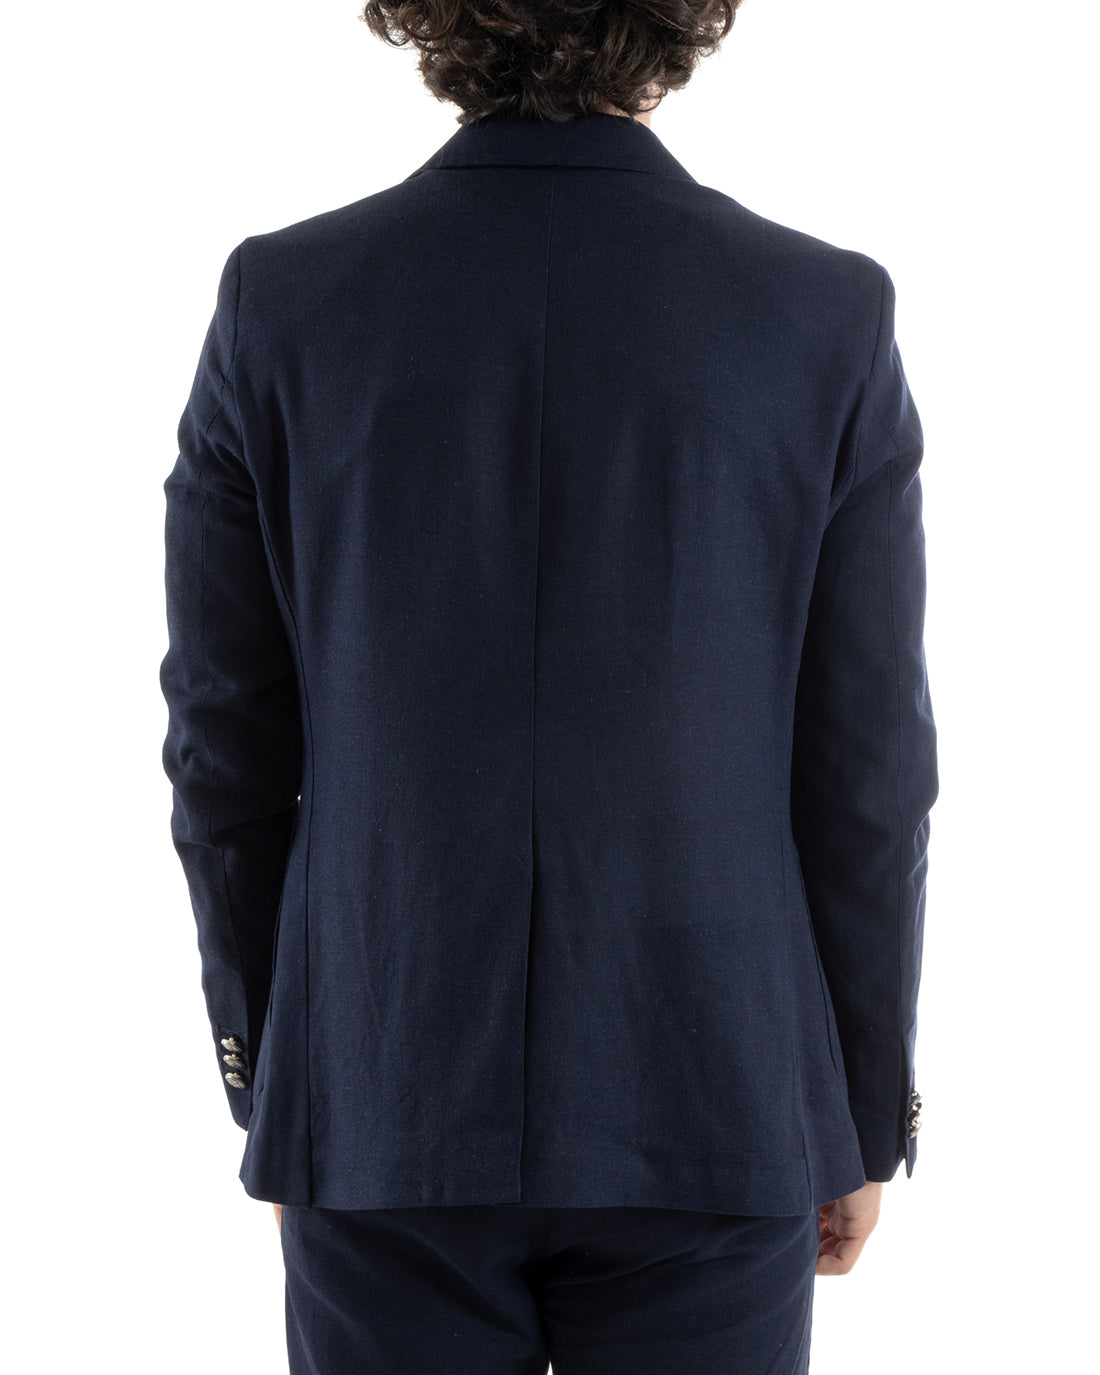 Double Breasted Men's Suit Linen Suit Suit Jacket Trousers Elegant Blue Ceremony GIOSAL-OU2383A